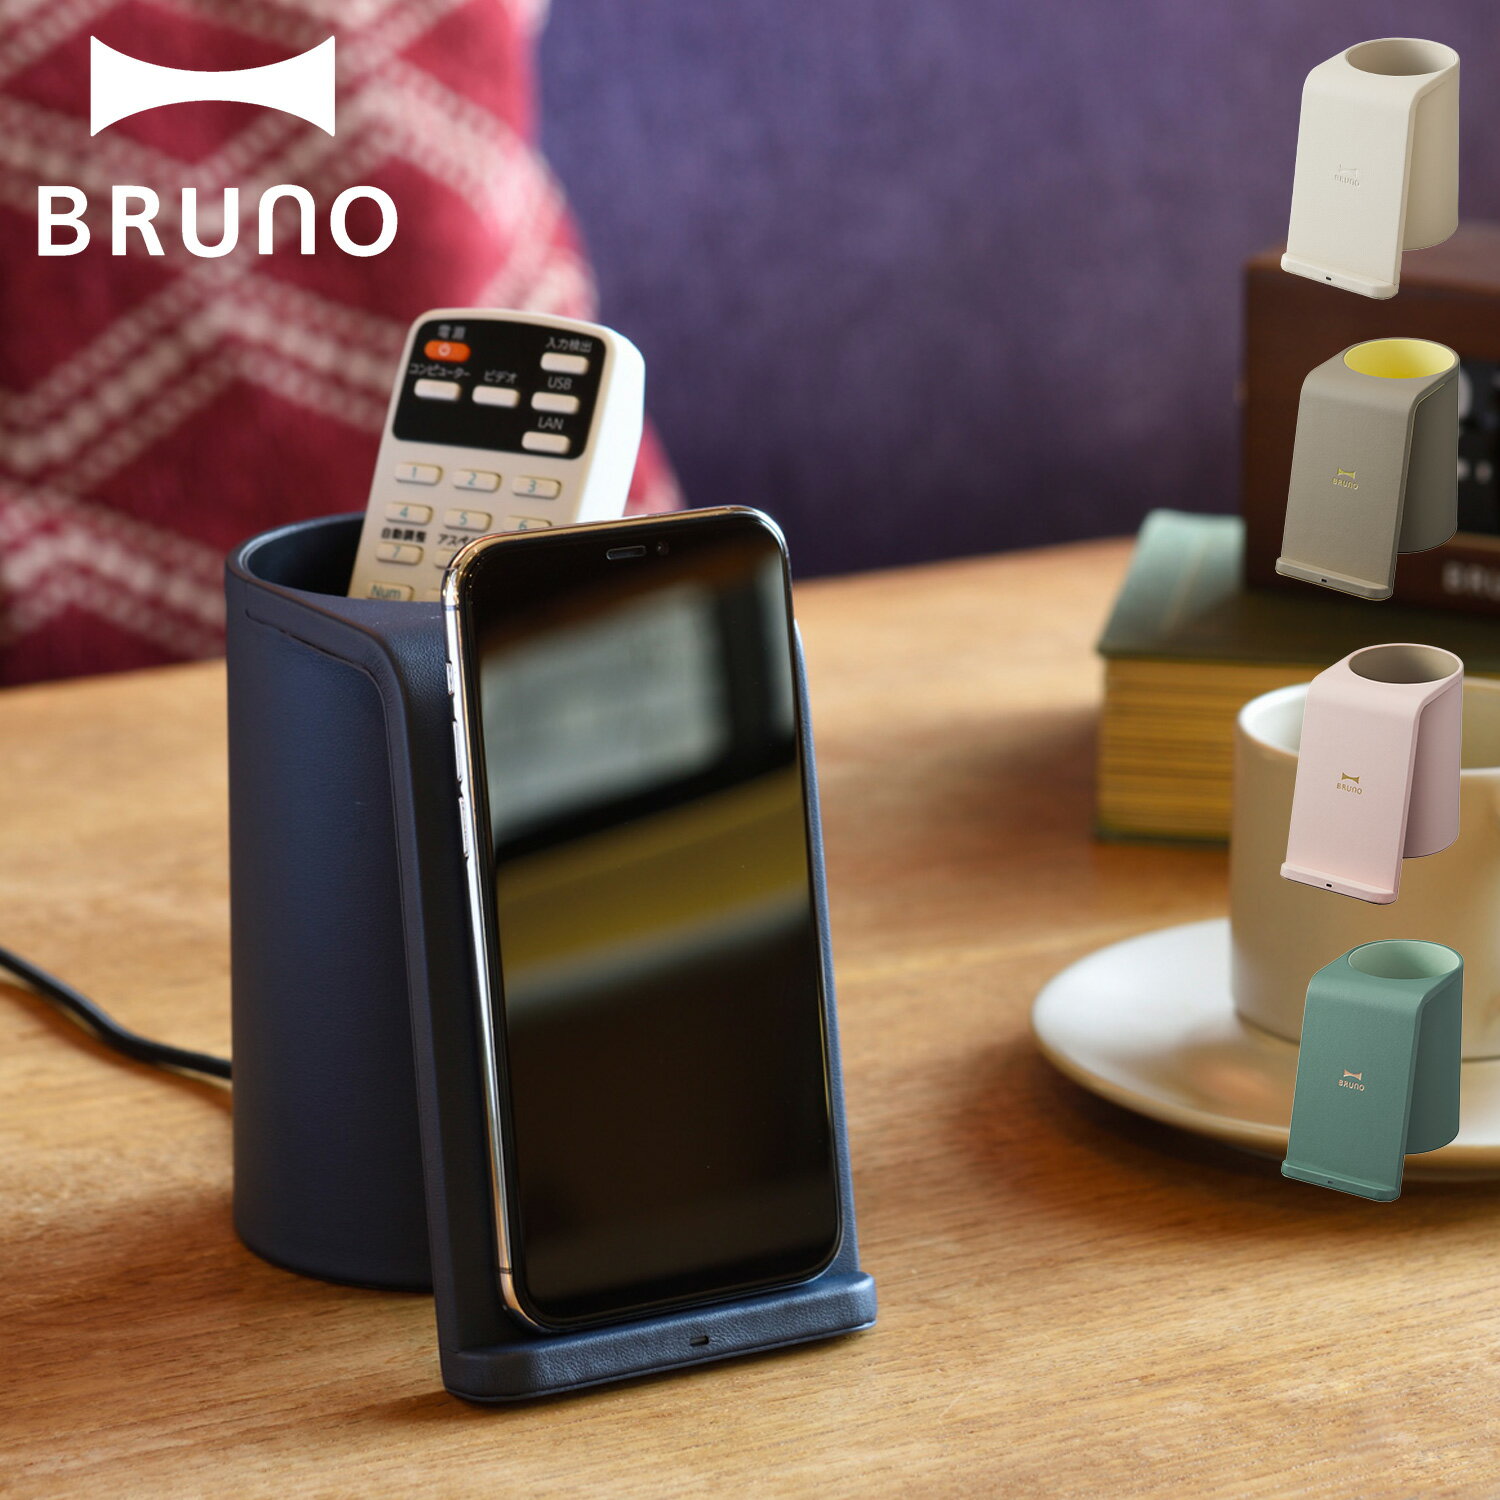 BRUNO ブルーノ ワイヤレス充電器 スタンド 収納ケース 小物入れ QI iPhone アンドロイド 携帯 スマホケース スマホショルダー 置くだけ充電 ワイヤレスチャージャー マルチスタンド グレージュ ネイビー BDE049